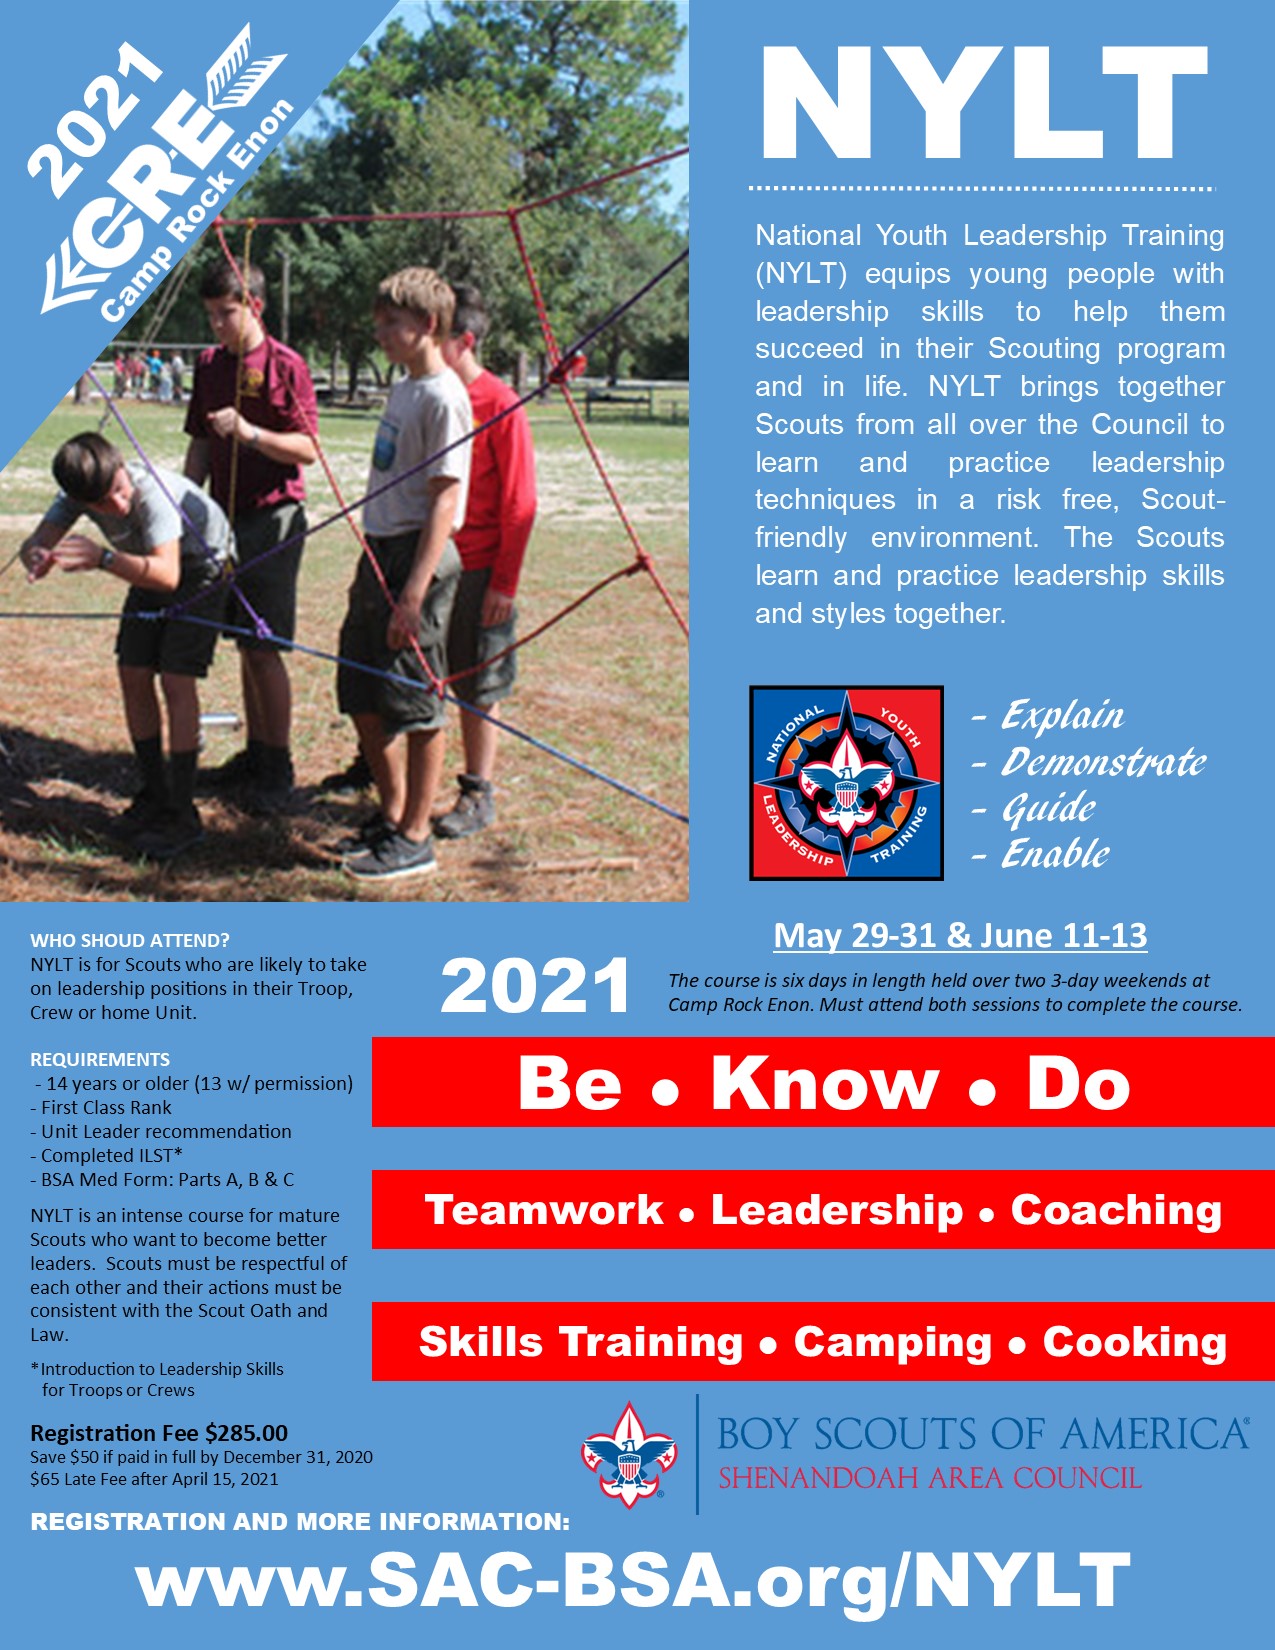 NYLT (National Youth Leadership Training)